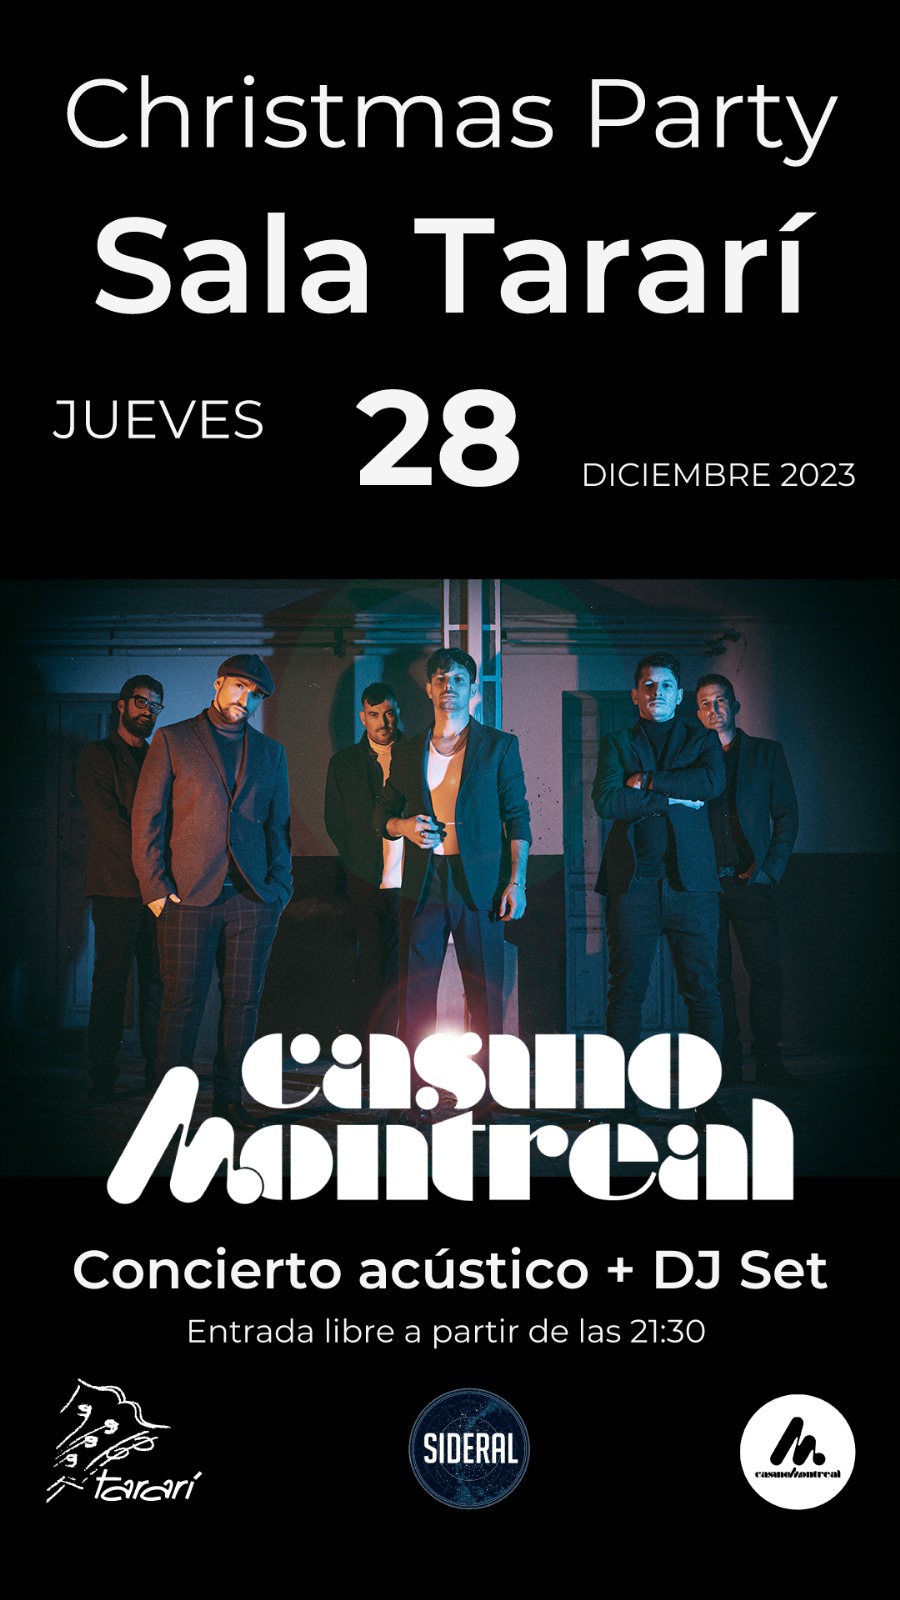 La banda berciana Casino Montreal cierra el año este jueves 28 en la Sala Tararí 2